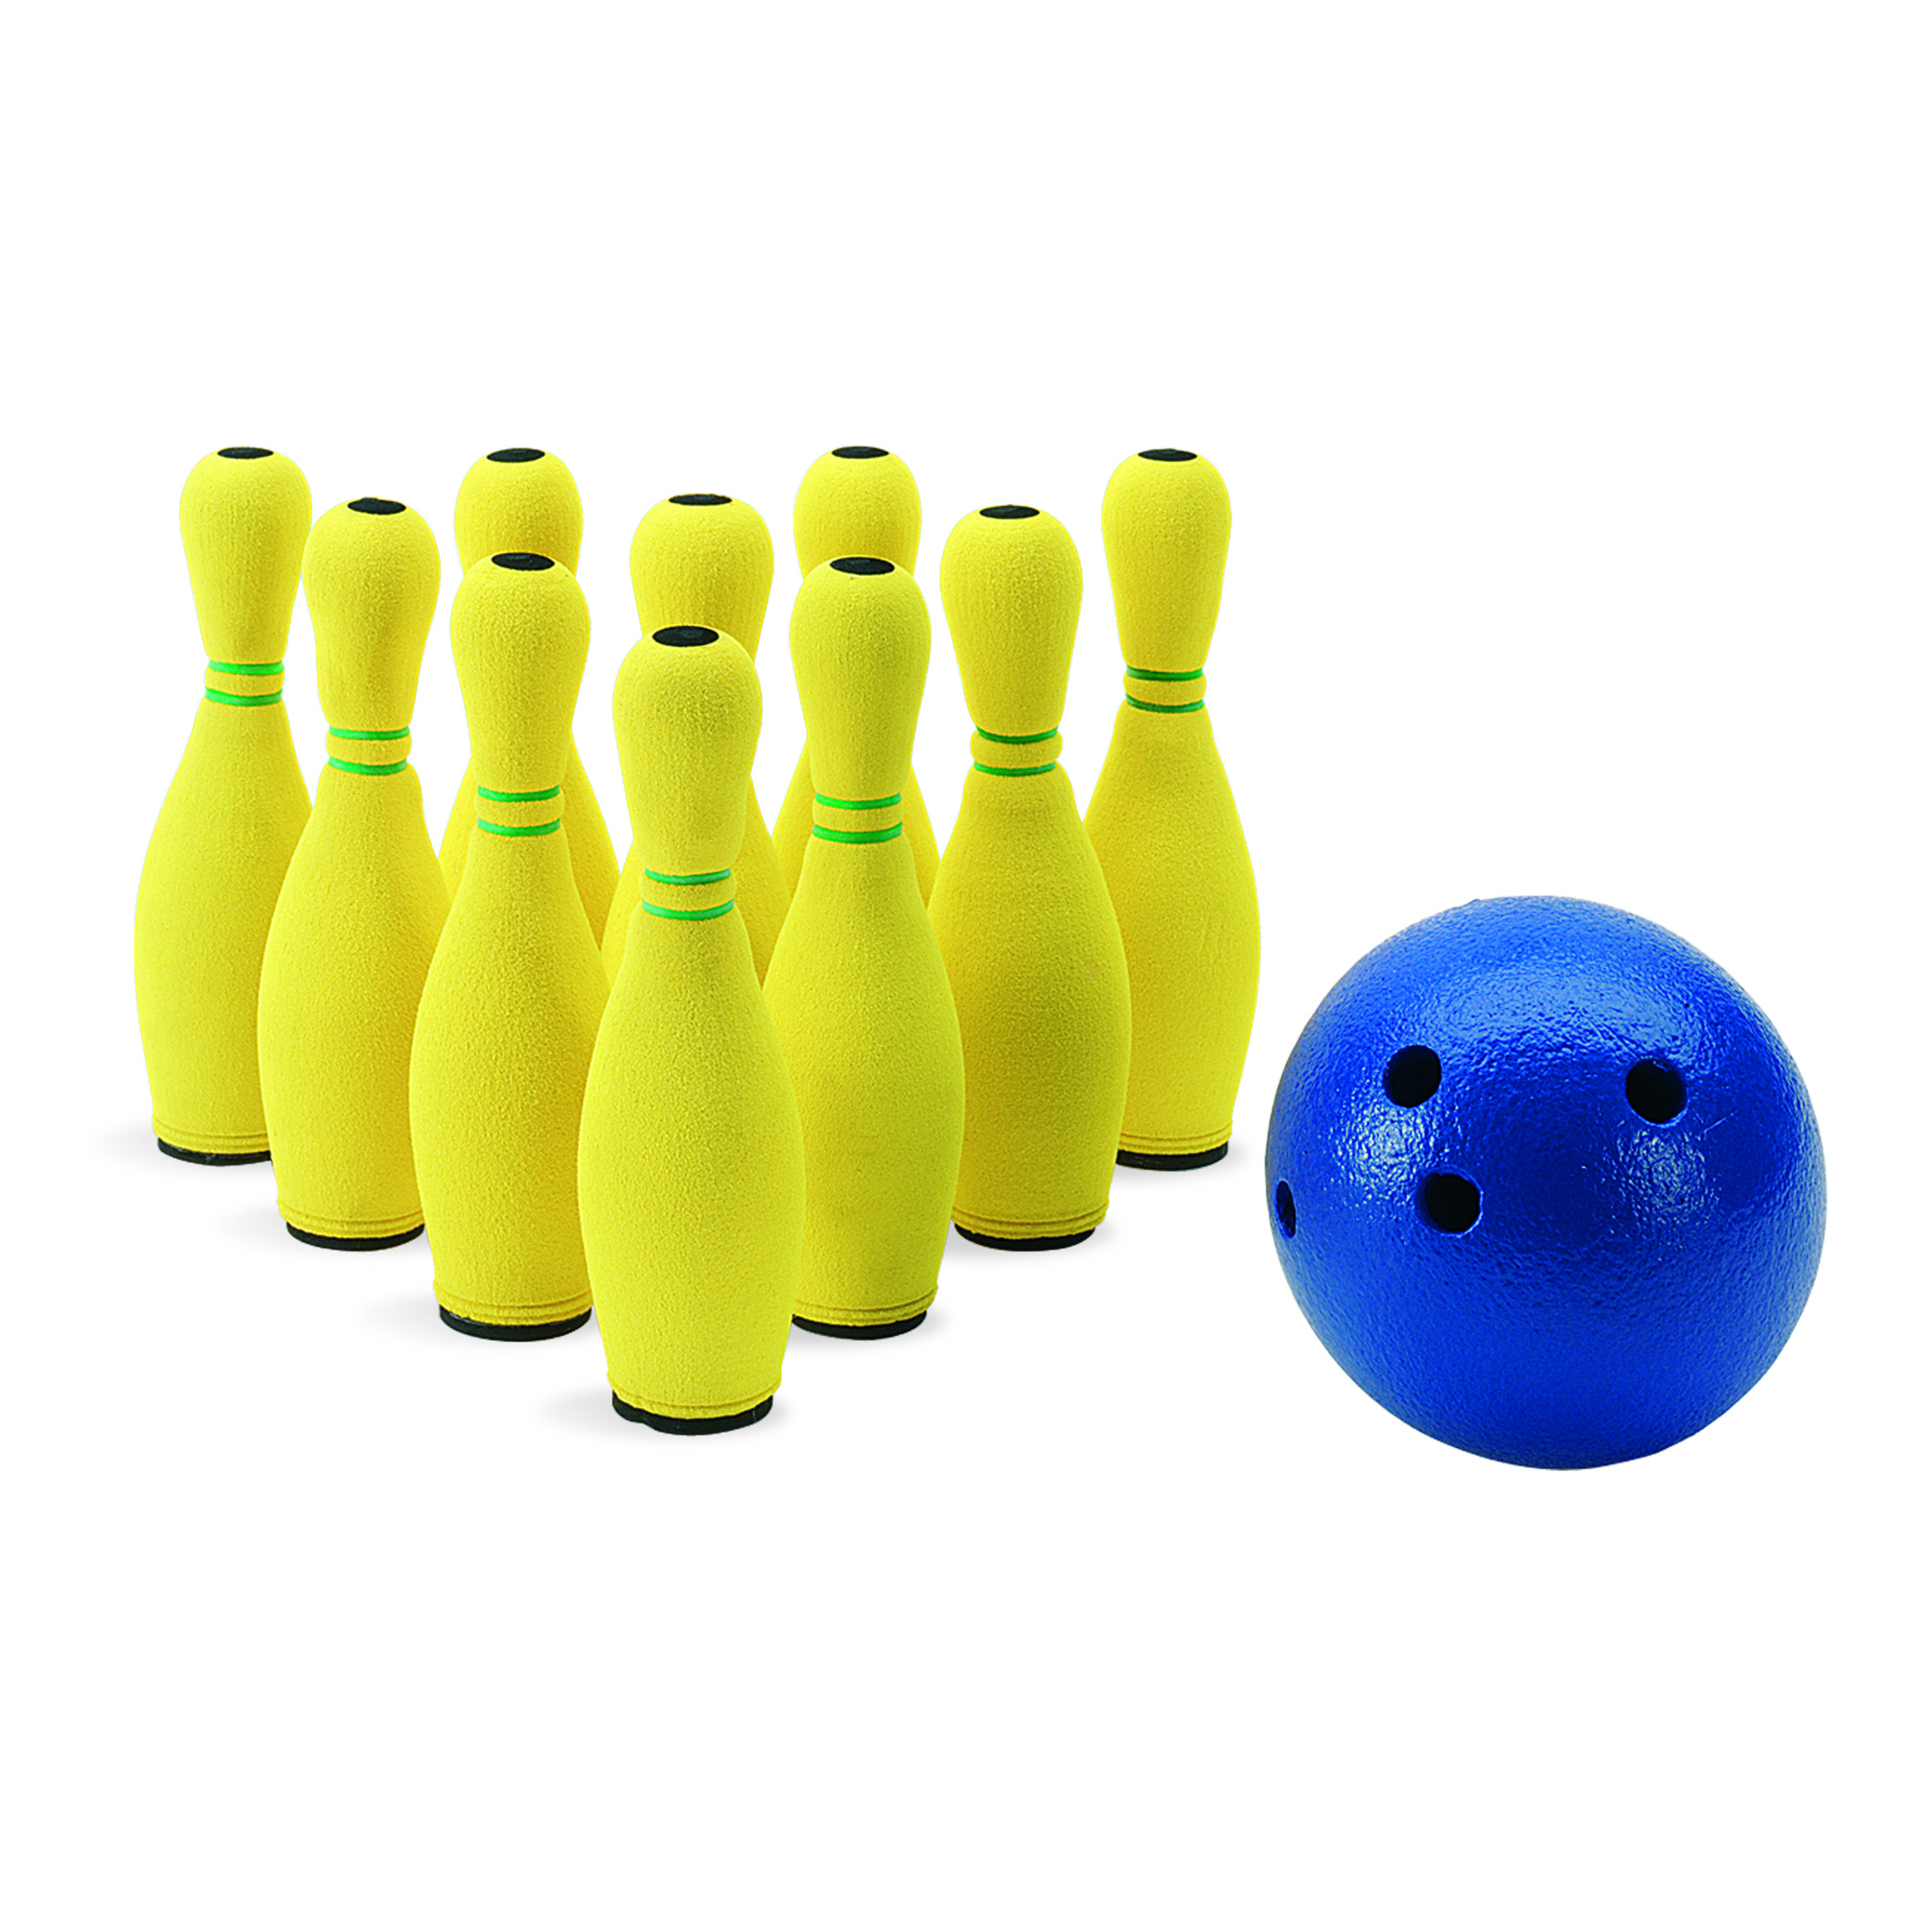 Bowlingspiel Kunststoff: 10 Kegel plus Bowlingkugel